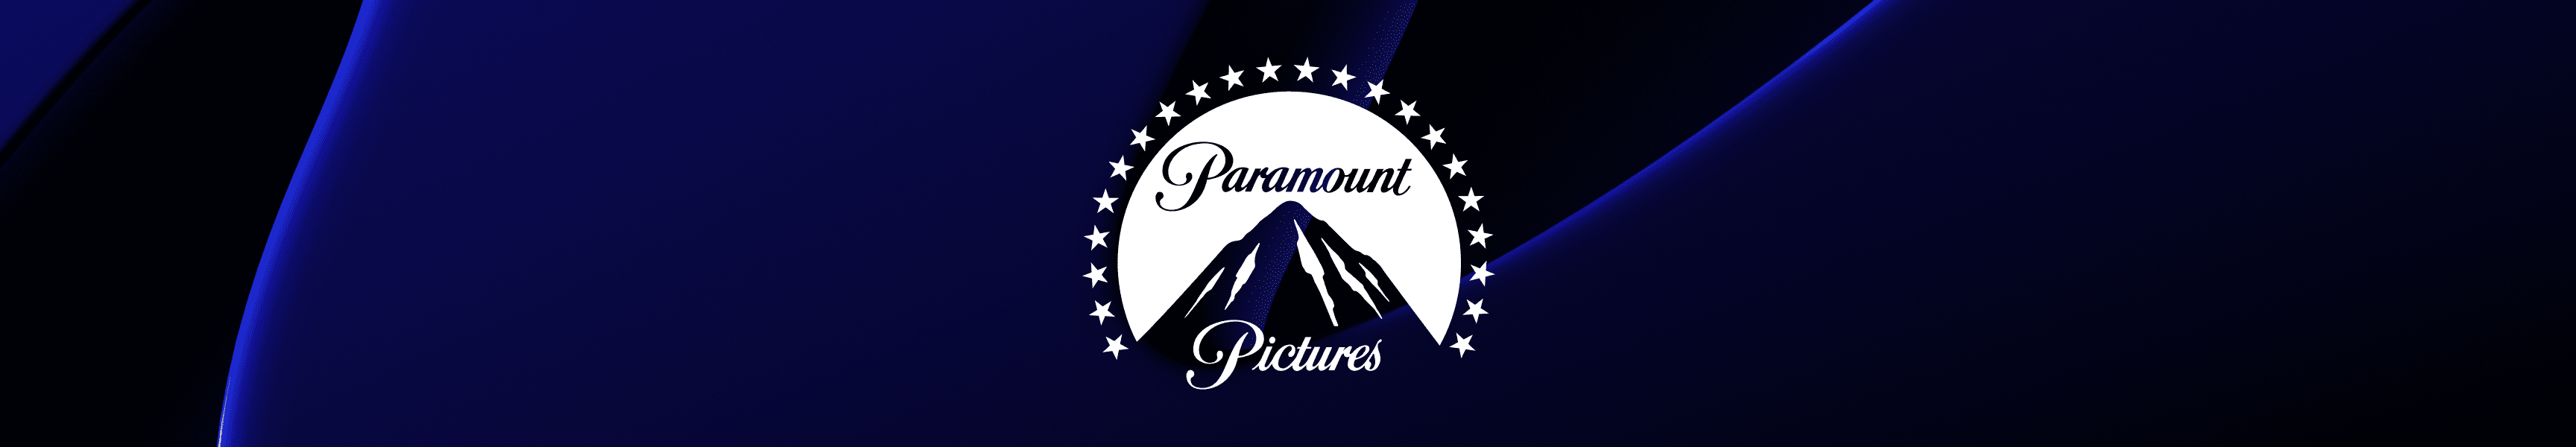 Paramount Pictures Wasserflaschen